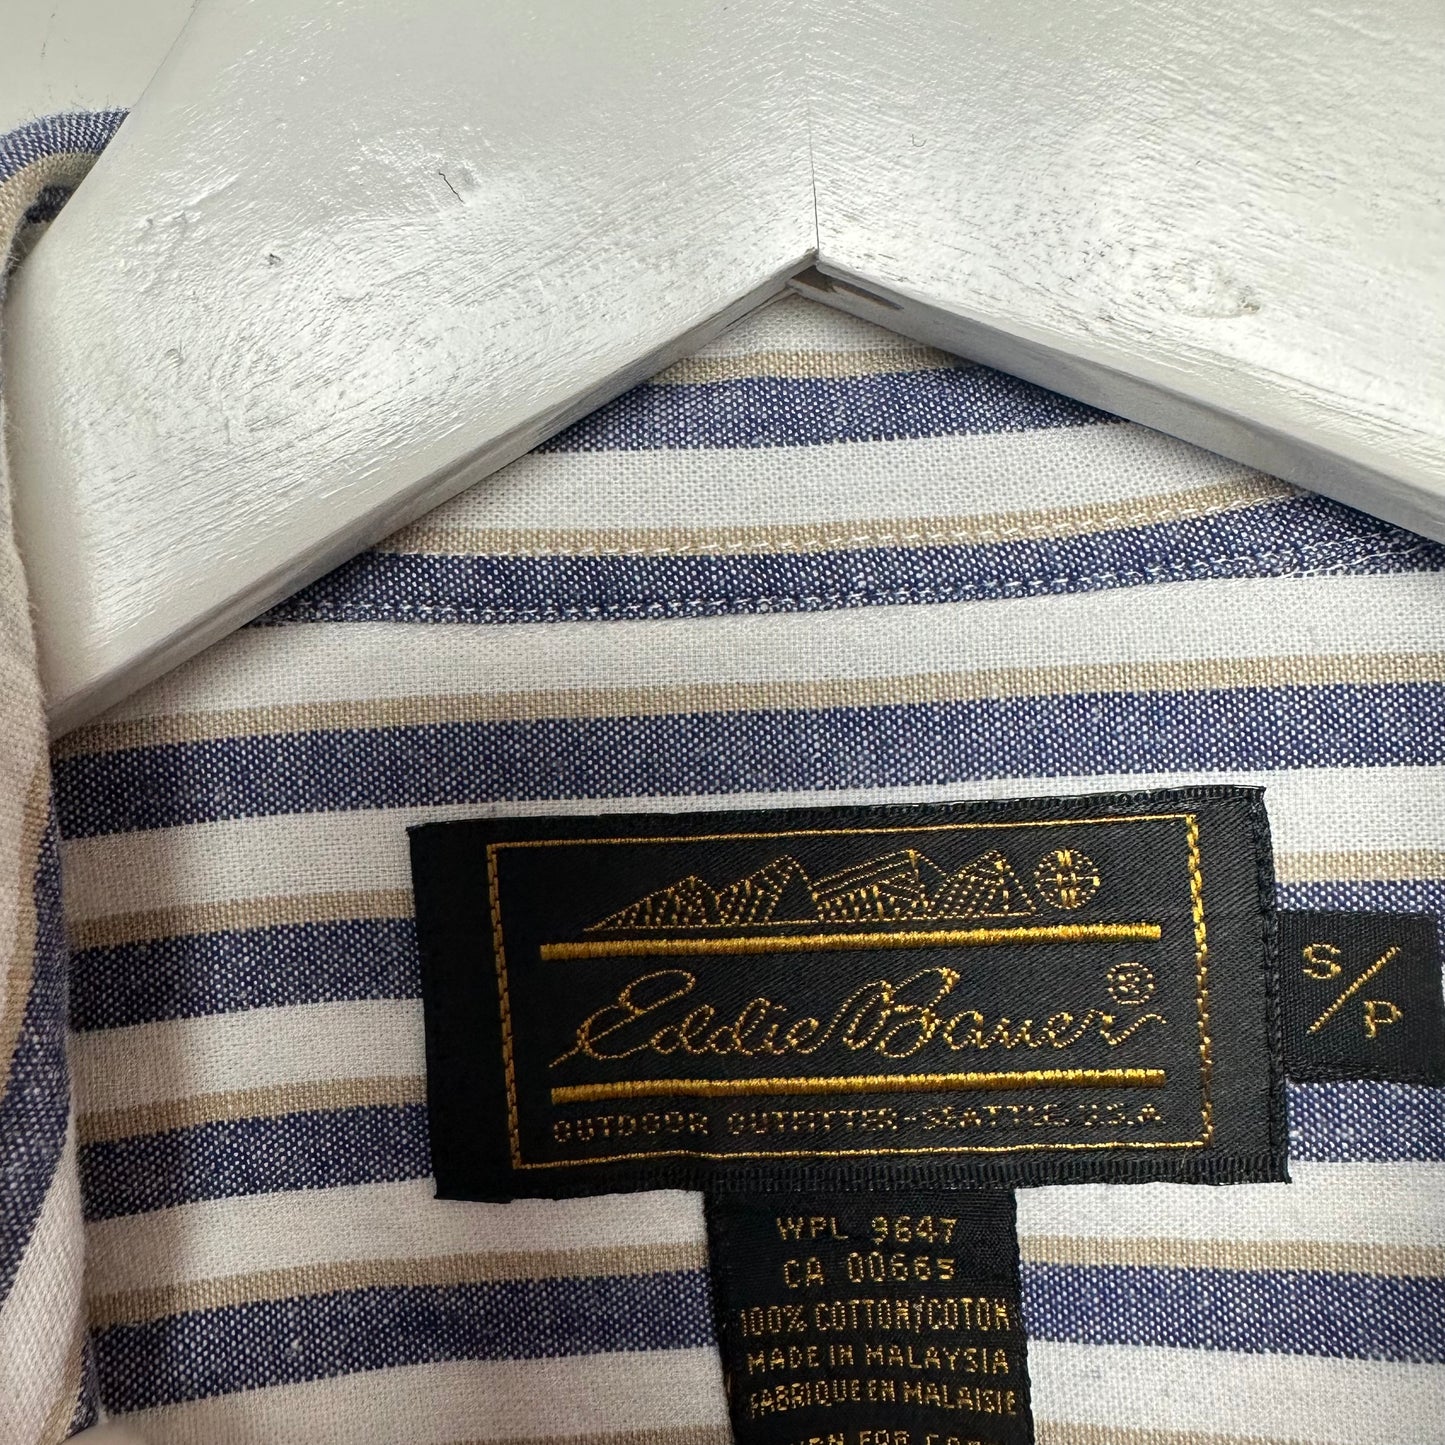 Vintage 90s Eddie Bauer Striped Button Down Collared Shirt Small Blue White Beige